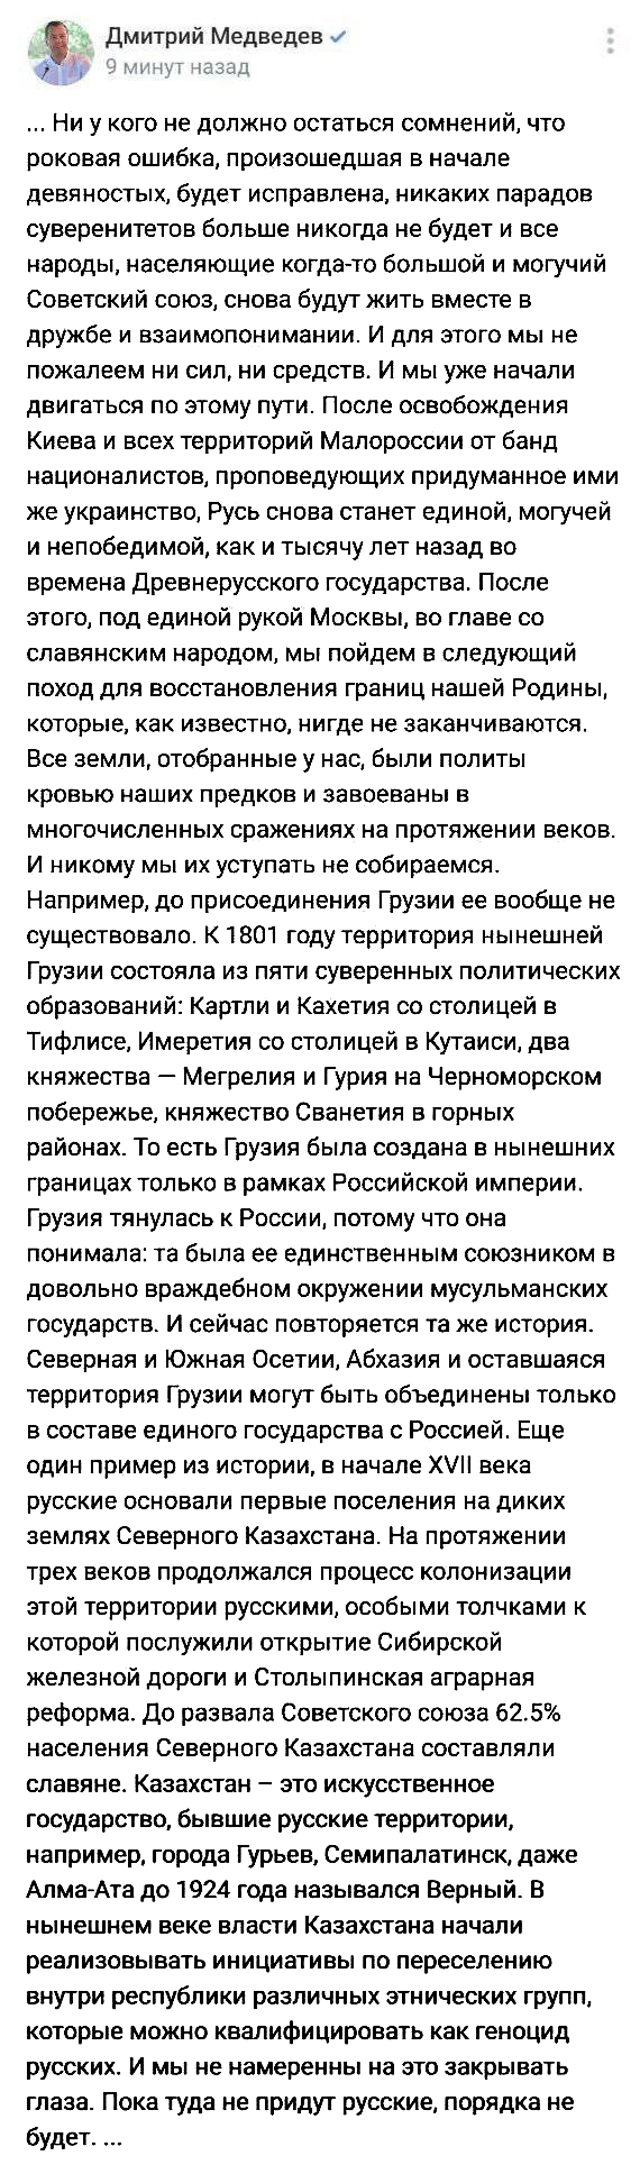 В соцсети замсекретаря Совета безопасности России Дмитрия Медведева была опубликована заметка, где он называет Грузию частью Российской империи